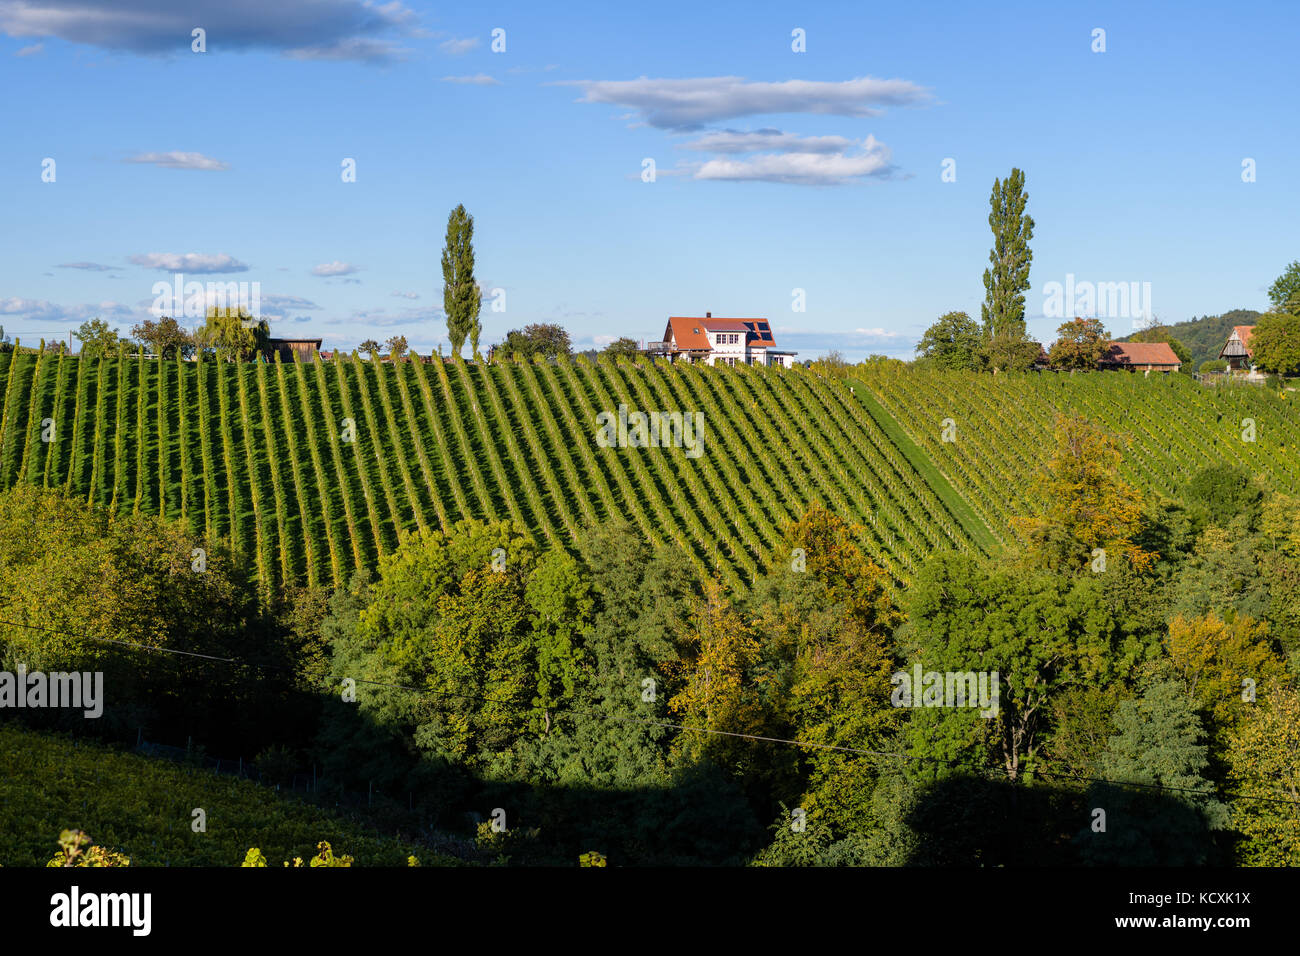 Touristique célèbre route des vins, weinstrasse sur la frontière entre l'Autriche et la Slovénie, vue de spicnik près de Maribor Banque D'Images